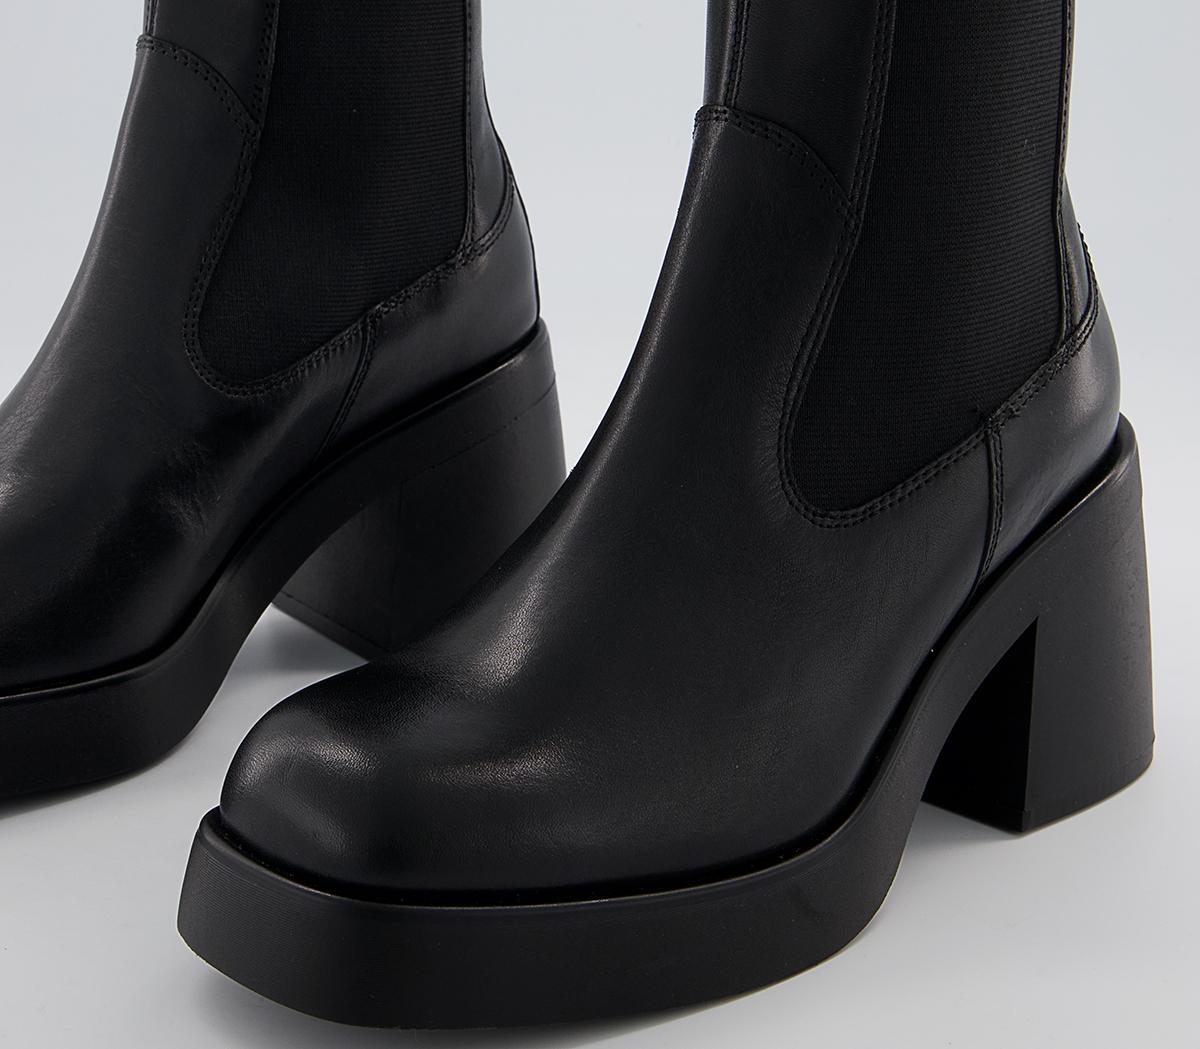 Vagabond Shoemakers Brooke Chelsea Boots Black - New Season Boots